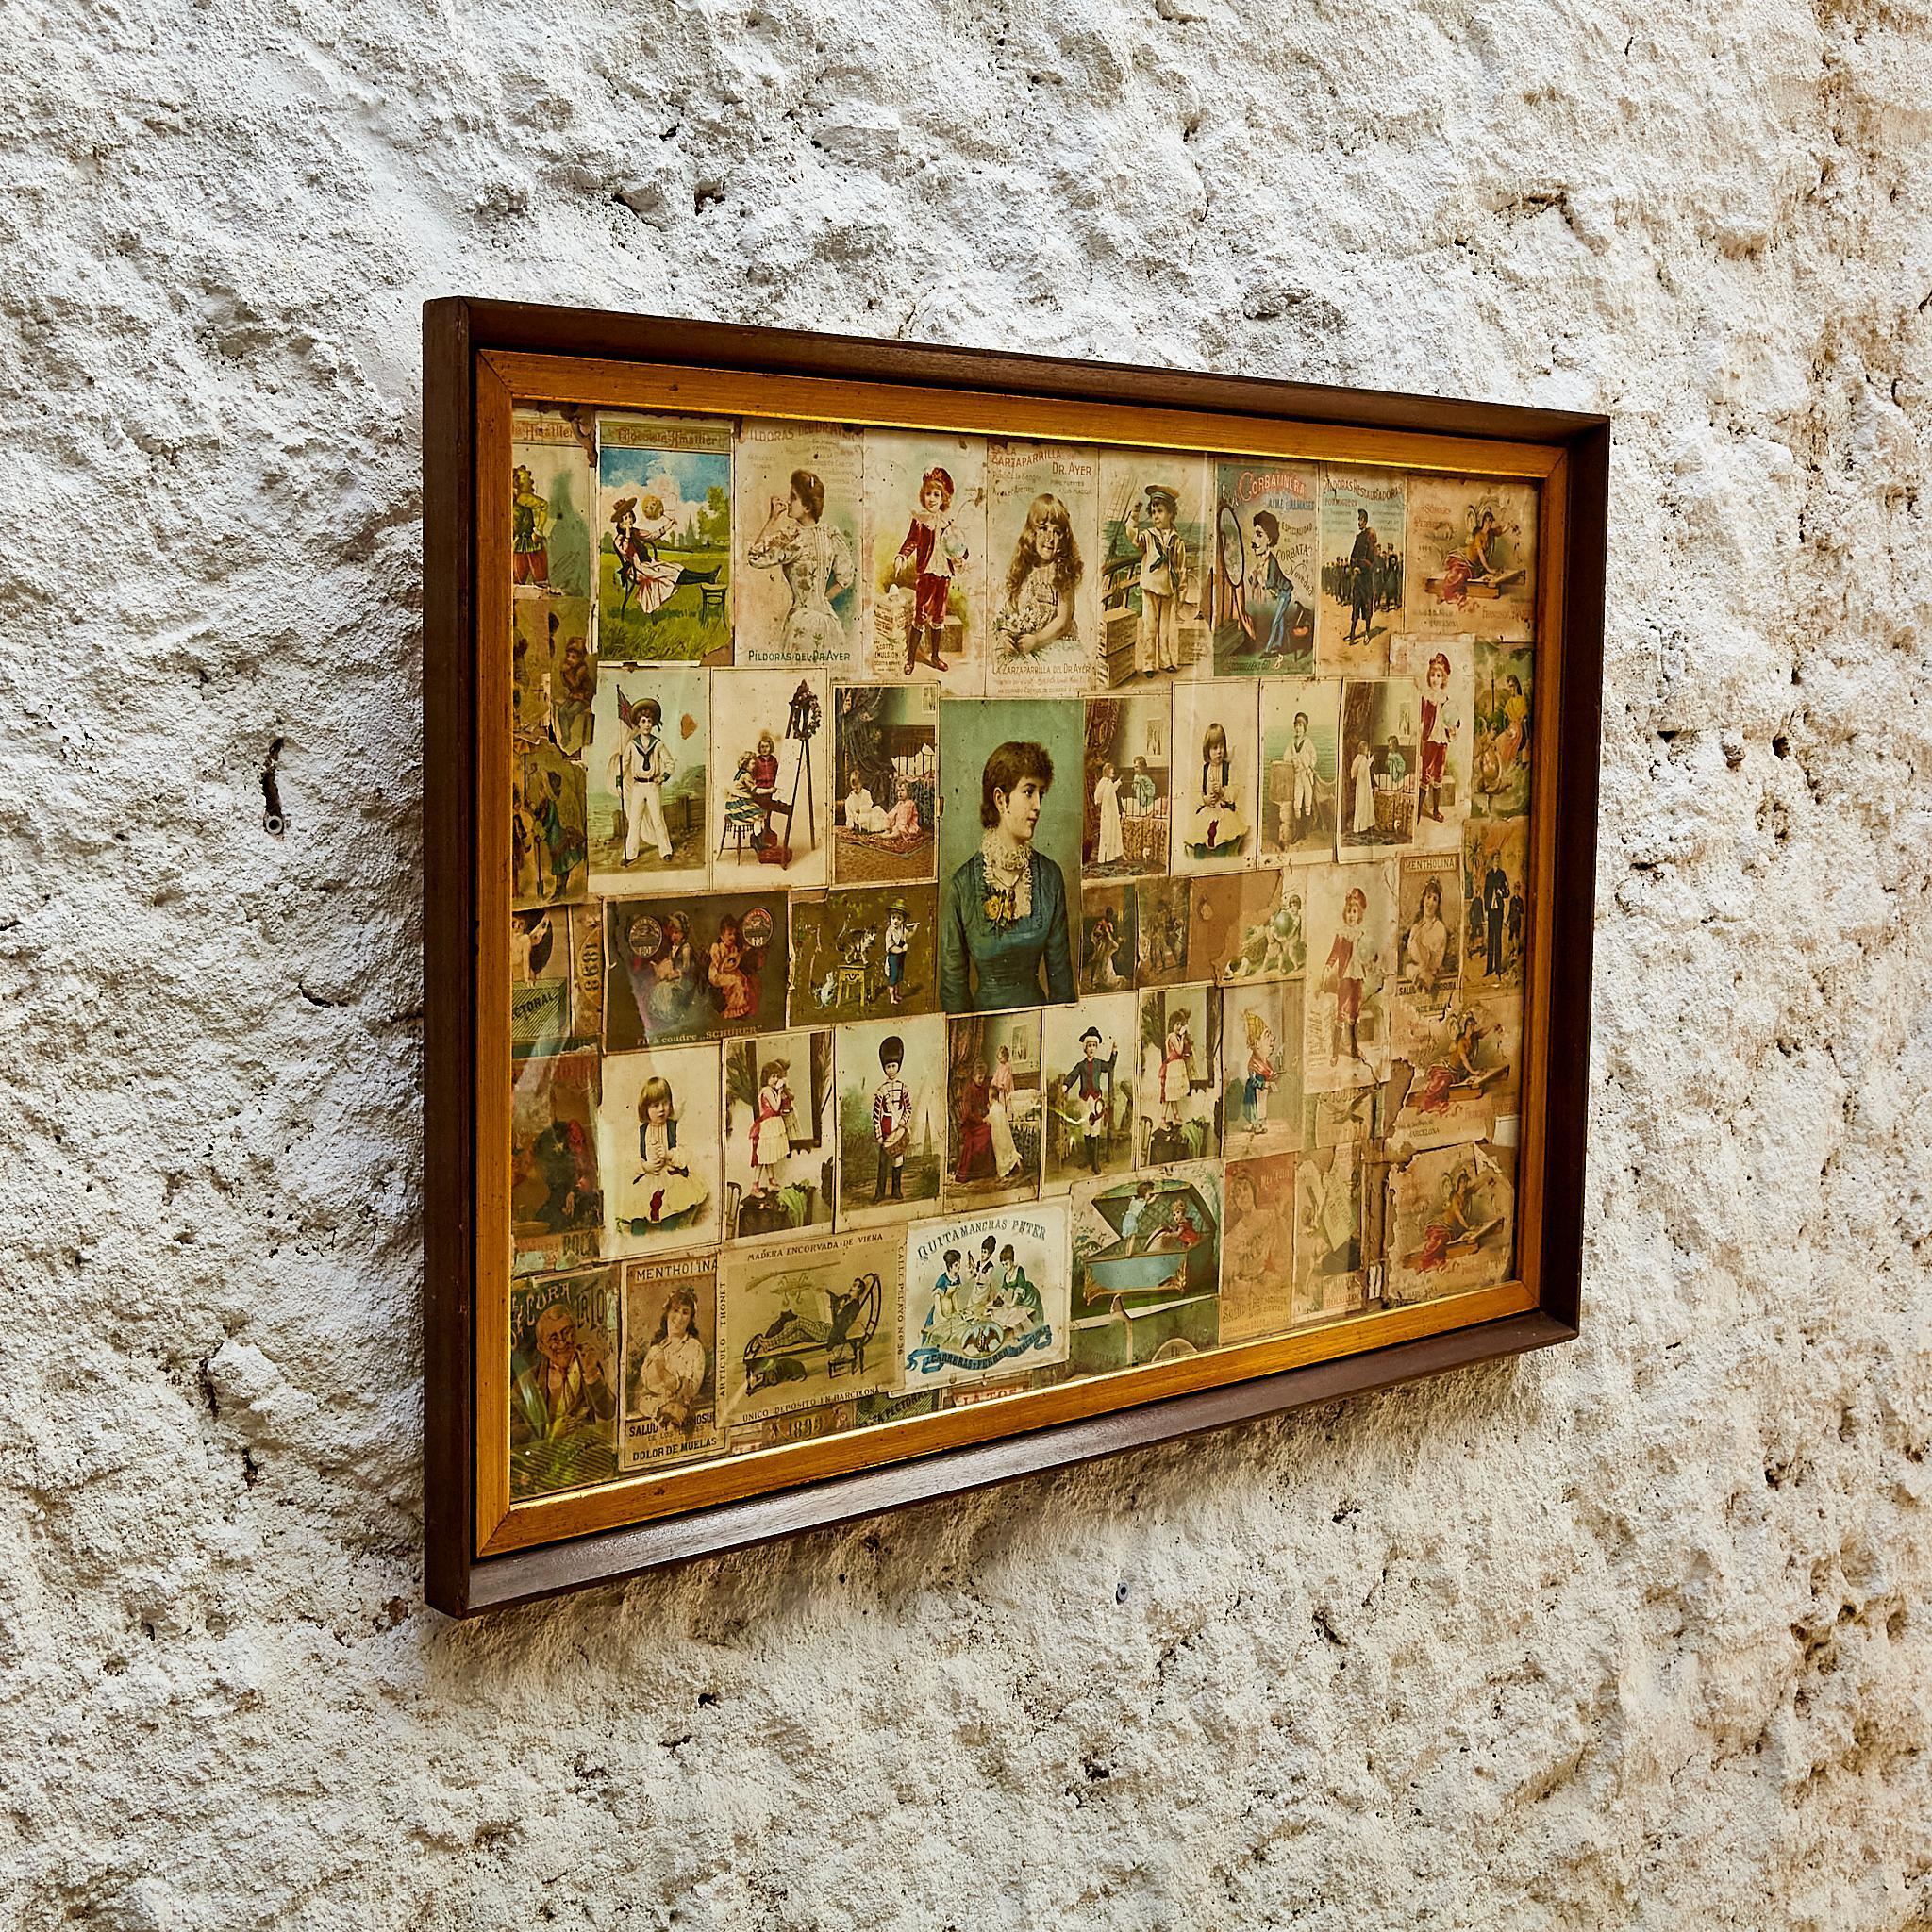 Gerahmte Original-Collage-Postkarte Werbung.

Hergestellt in Spanien, um 1930

Abmessungen: 
T 3 x B 84 H 58 cm

Originaler Zustand mit geringen alters- und gebrauchsbedingten Abnutzungserscheinungen, der eine schöne Patina aufweist.

Wichtige